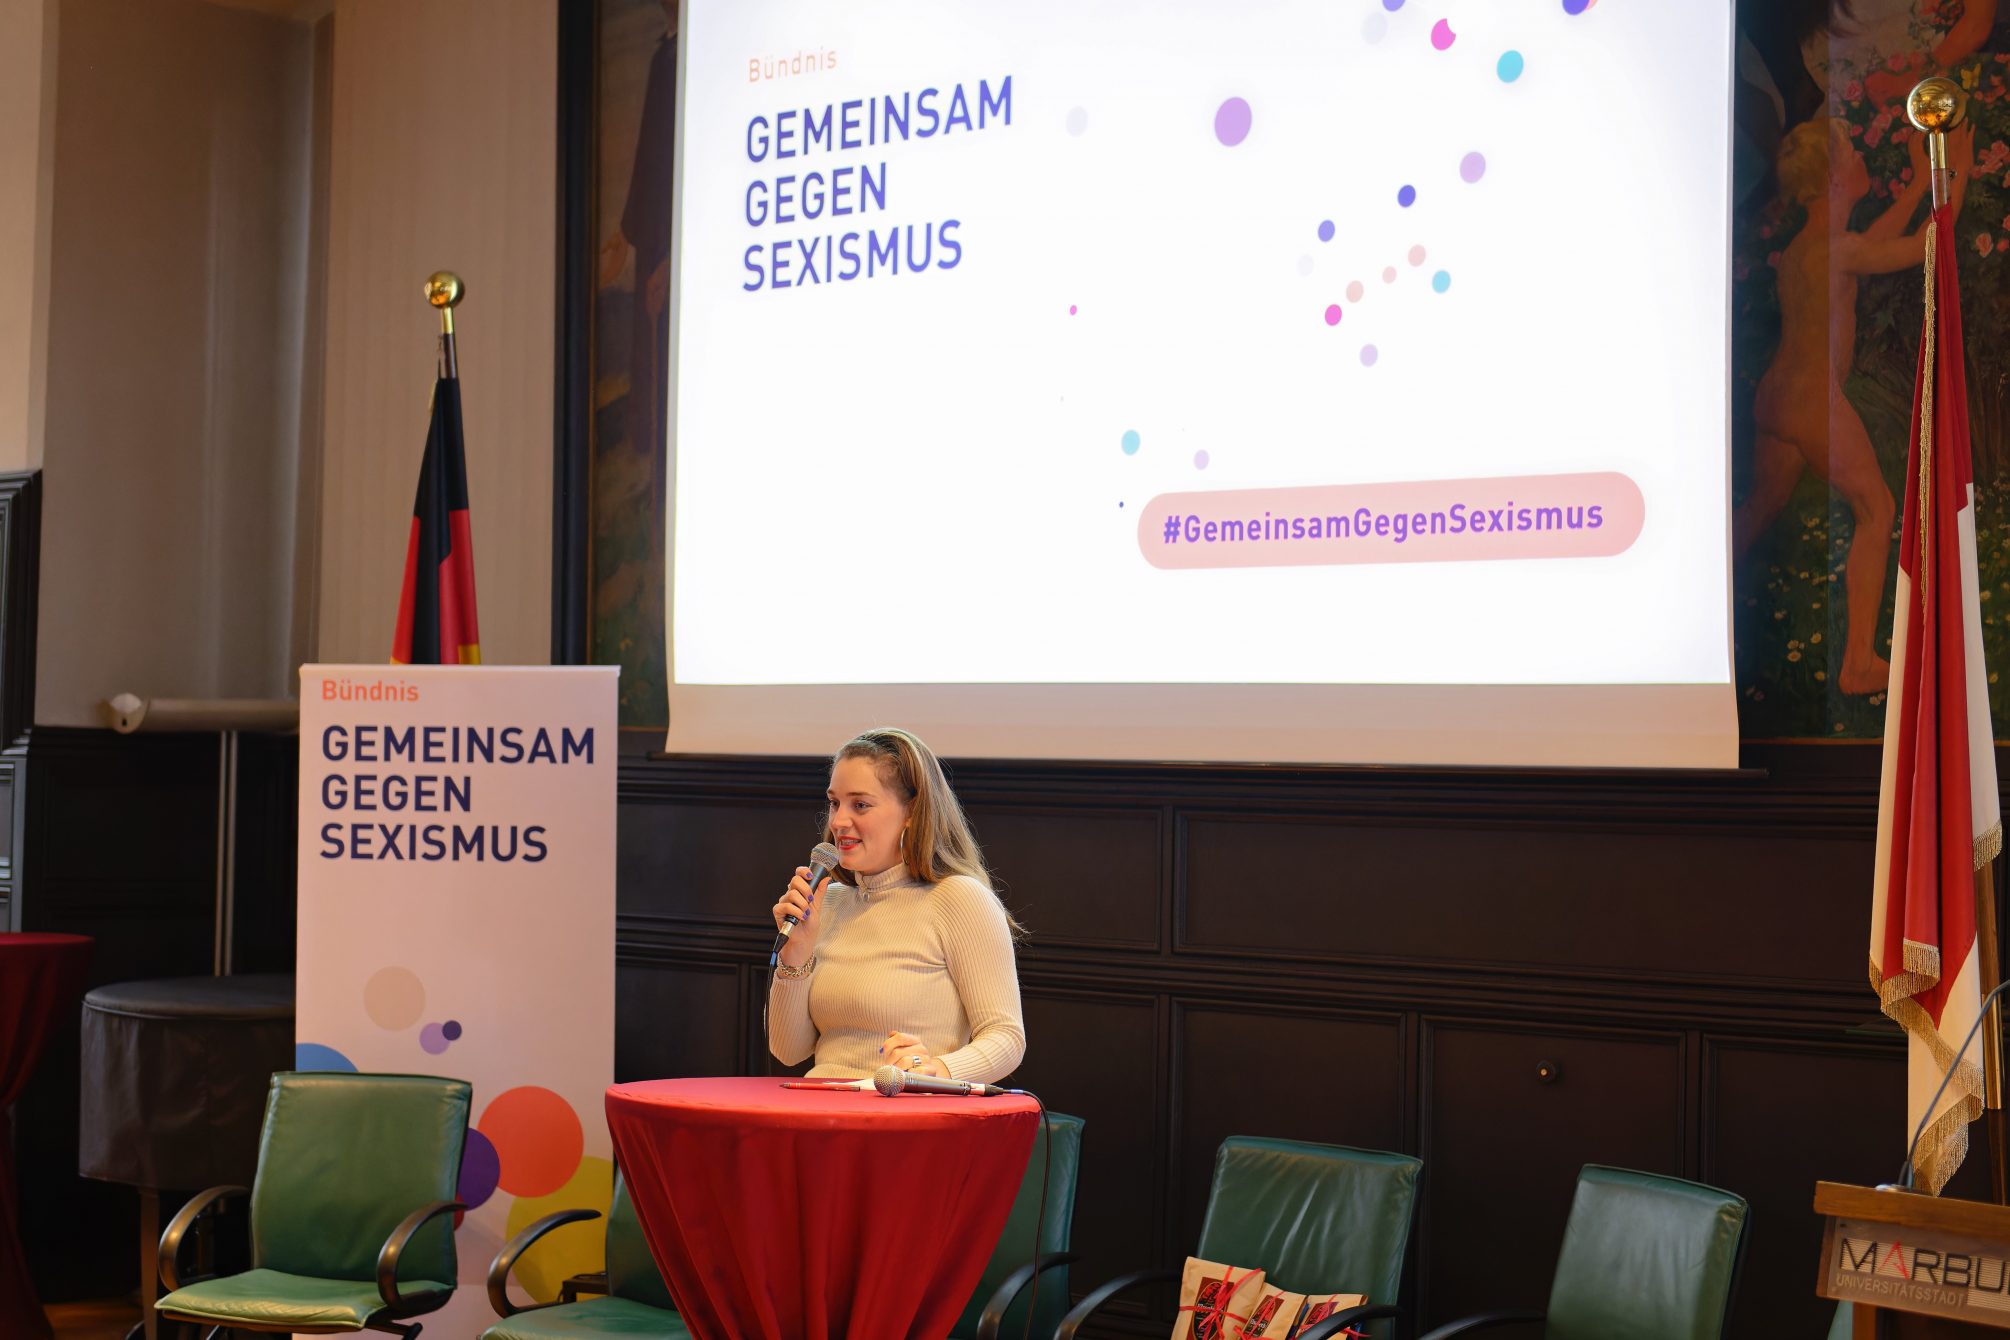 Anouchka Strunden moderiert die Ergebnissicherung des Aktionstags gegen Sexismus in Marburg